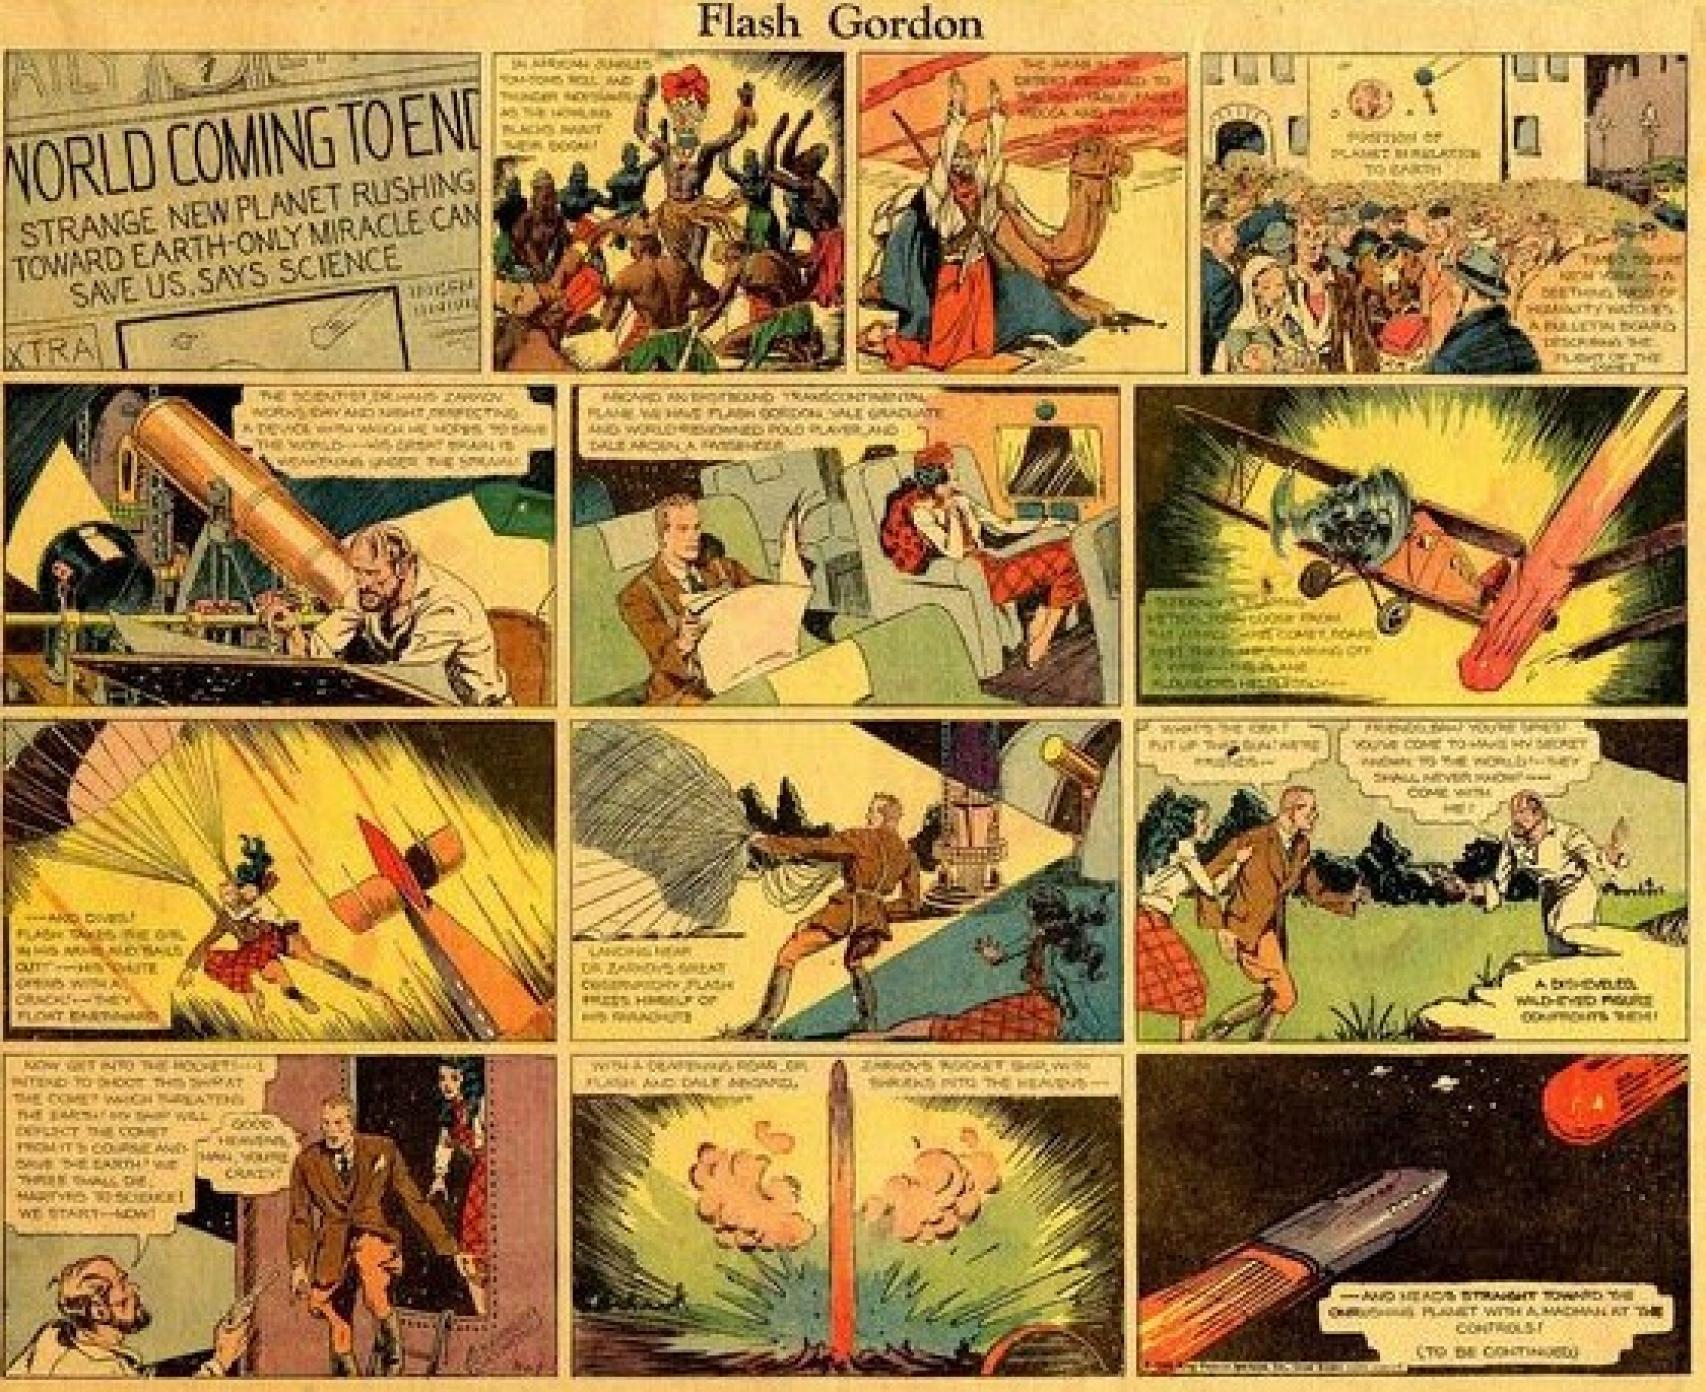 Primera aparición de Flash Gordon, en 1934